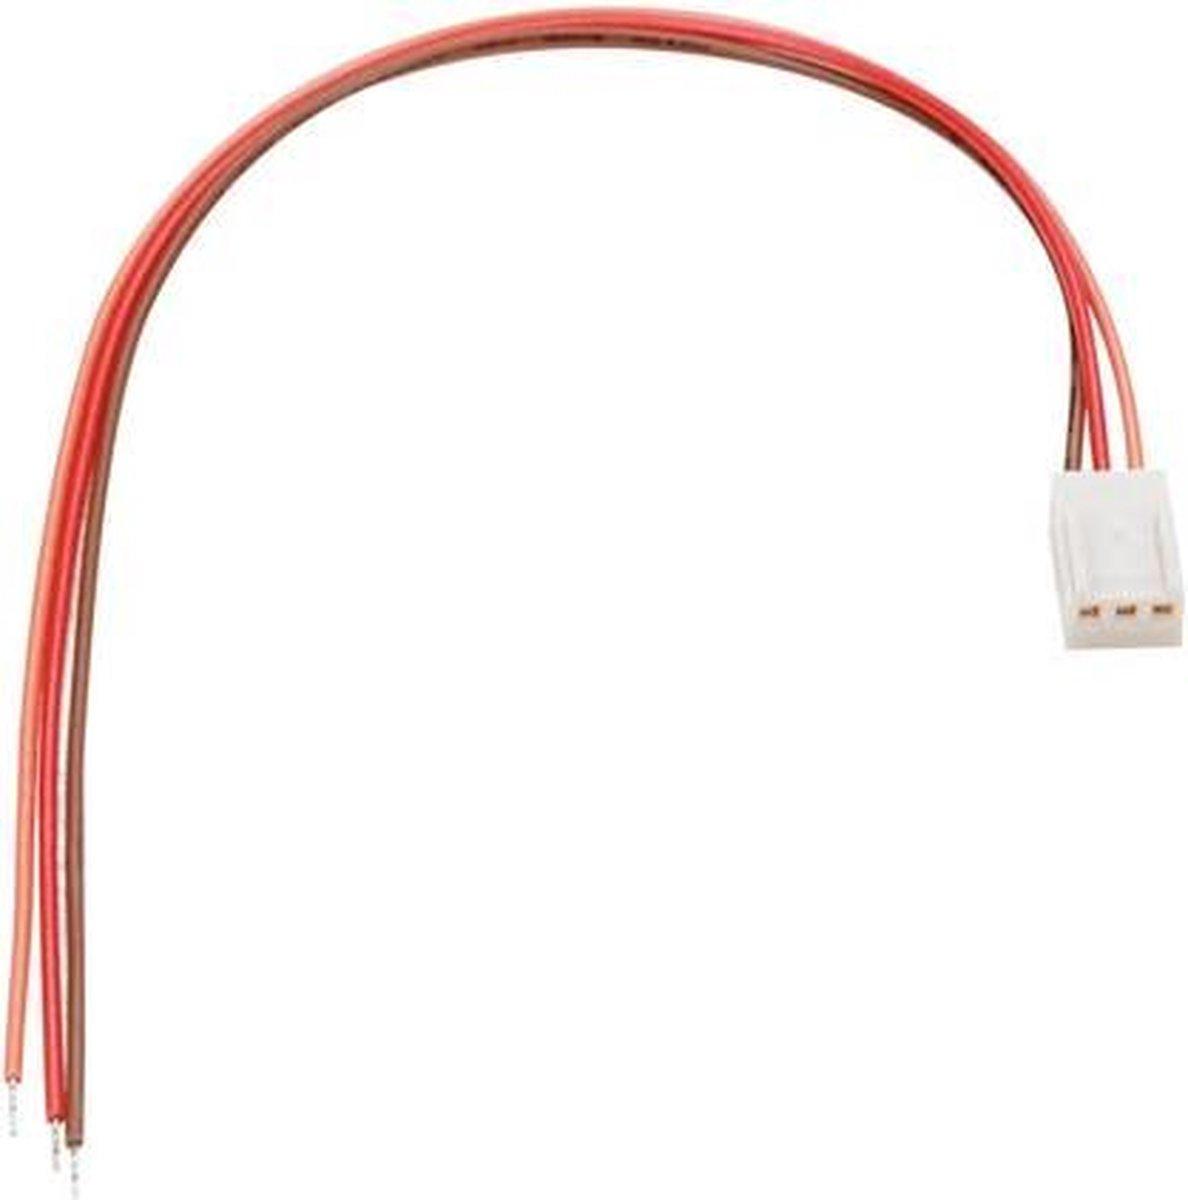 Connecteur avec câble pour ci - femelle - 3 contacts / 20cm